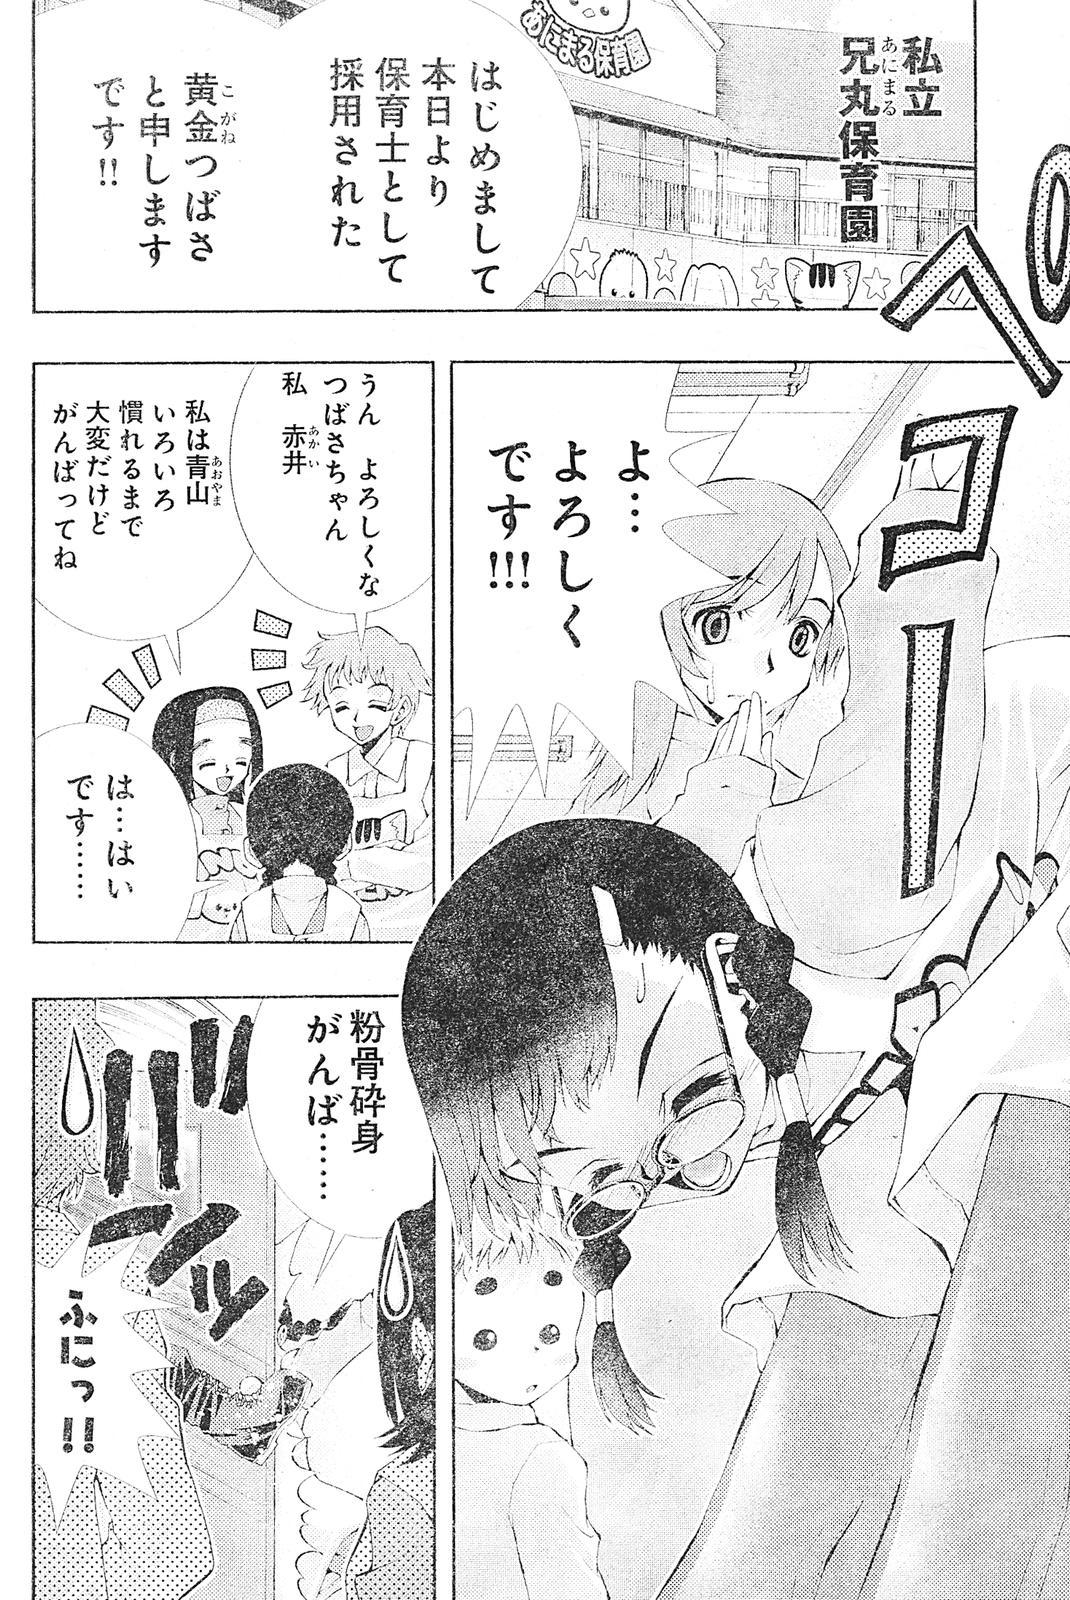 Kinky Yan hobo by matsuyama seiji Woman - Page 4